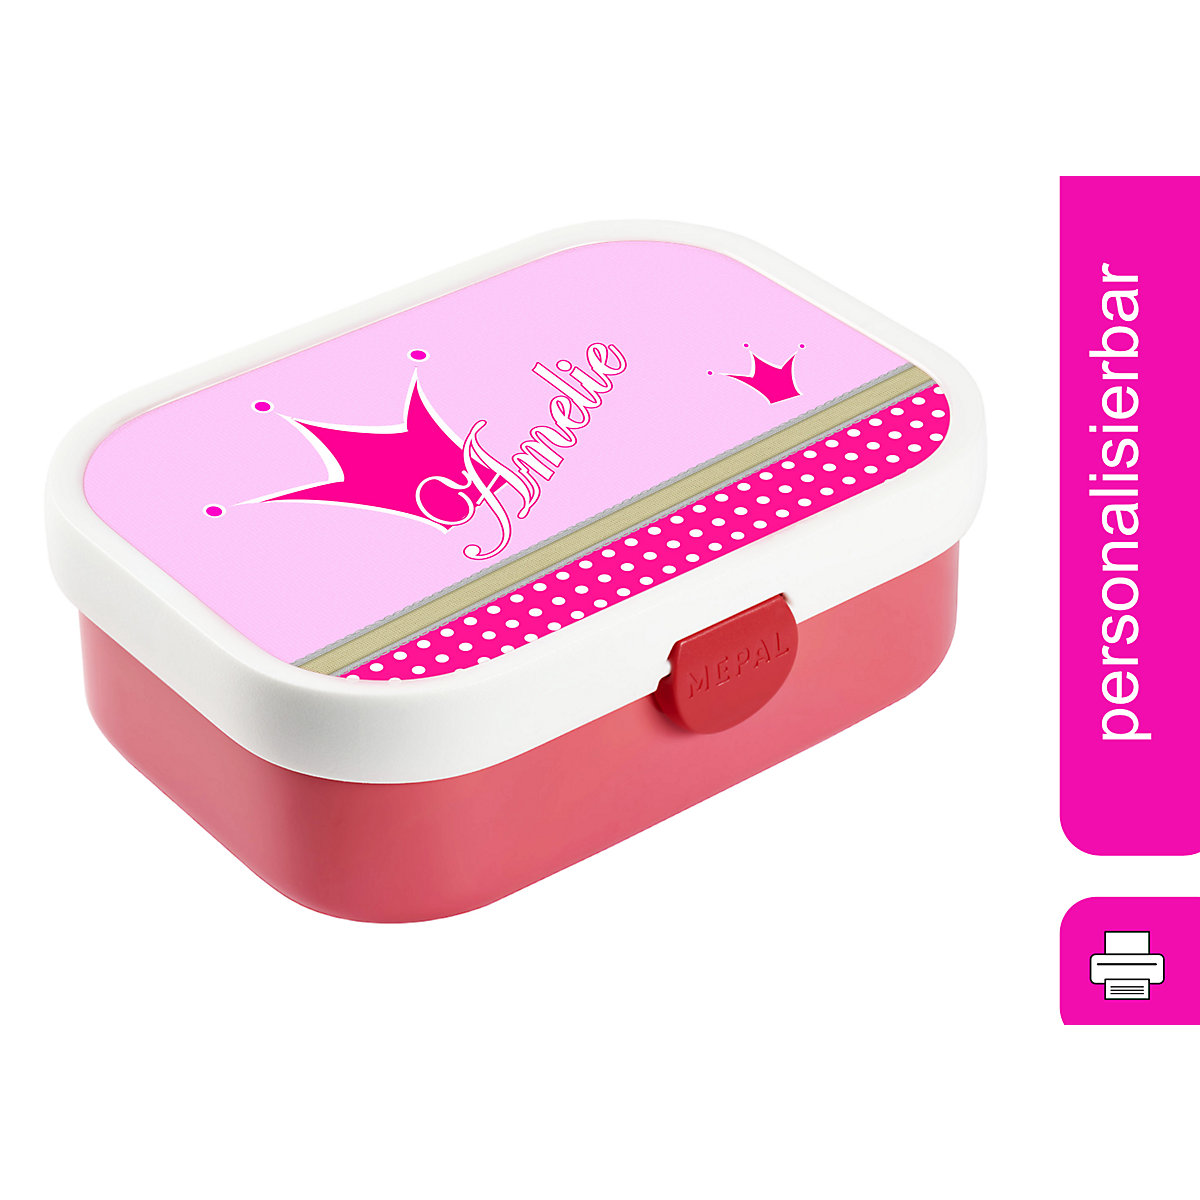 CreaDesign Brotdose Mepal Kinder mit Fächern mit Name personalisiert Prinz / Prinzessin pink